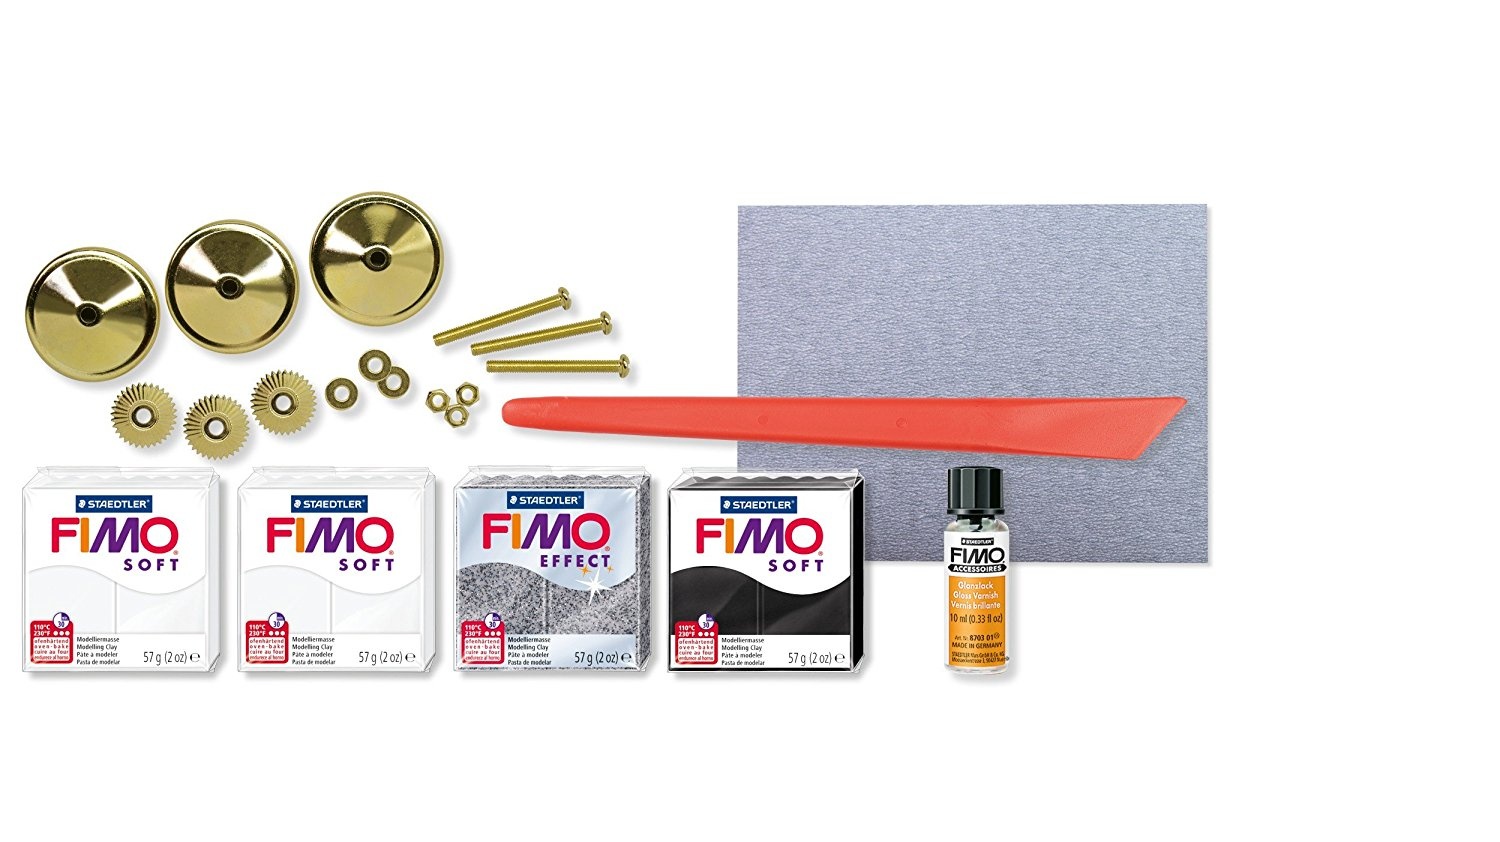 STAEDTLER Fimo Soft 8025 12 DIY Home Decorative Knöpfe Set